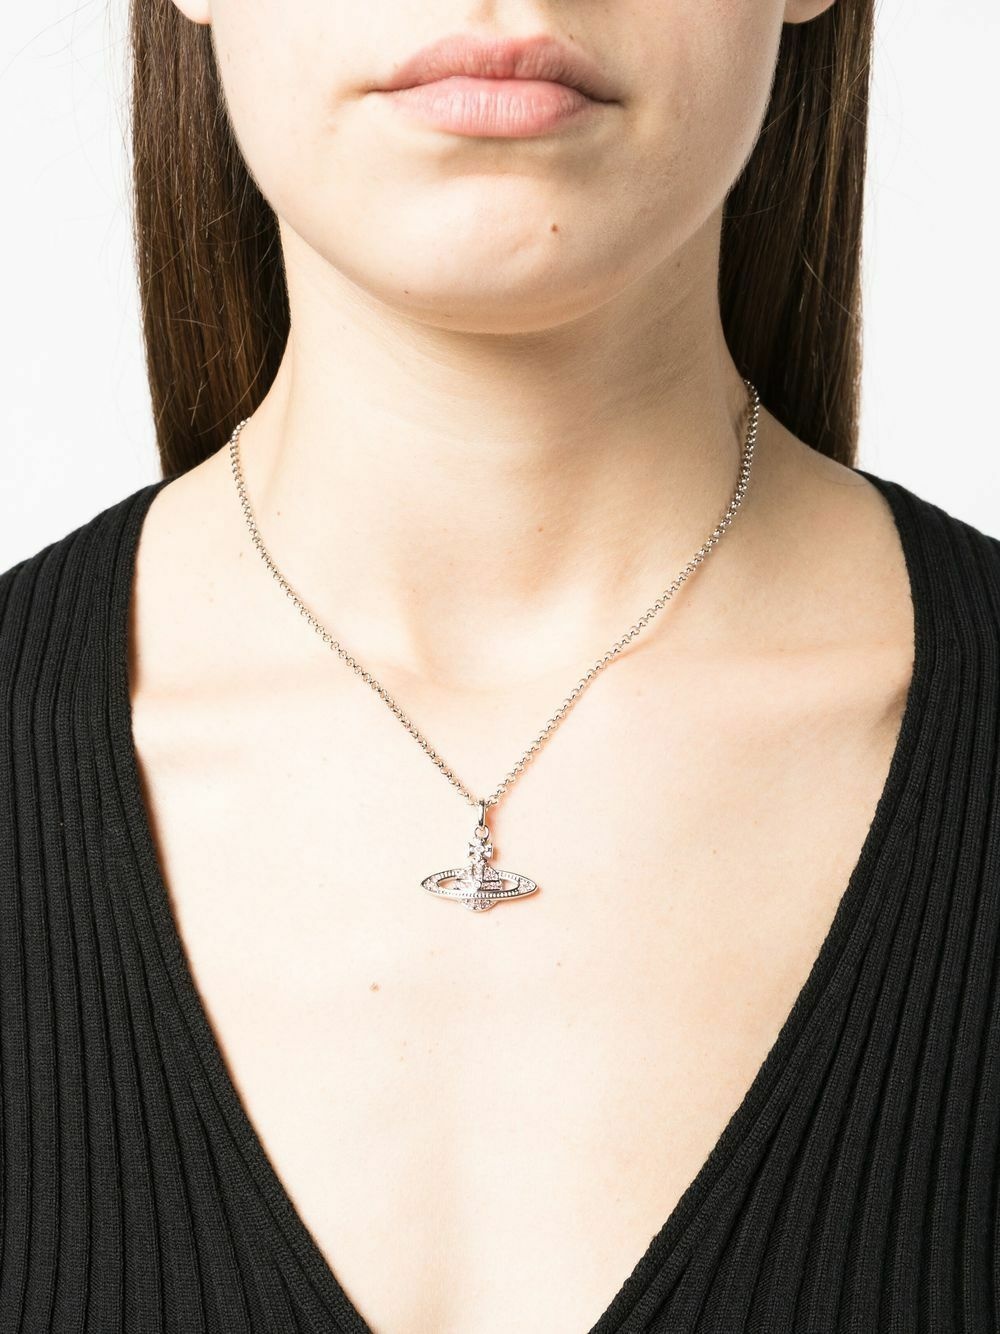 Vivienne Westwood Mini Bas Relief Pendant Necklace - Farfetch | Embellished  necklace, Vivienne westwood, Necklace